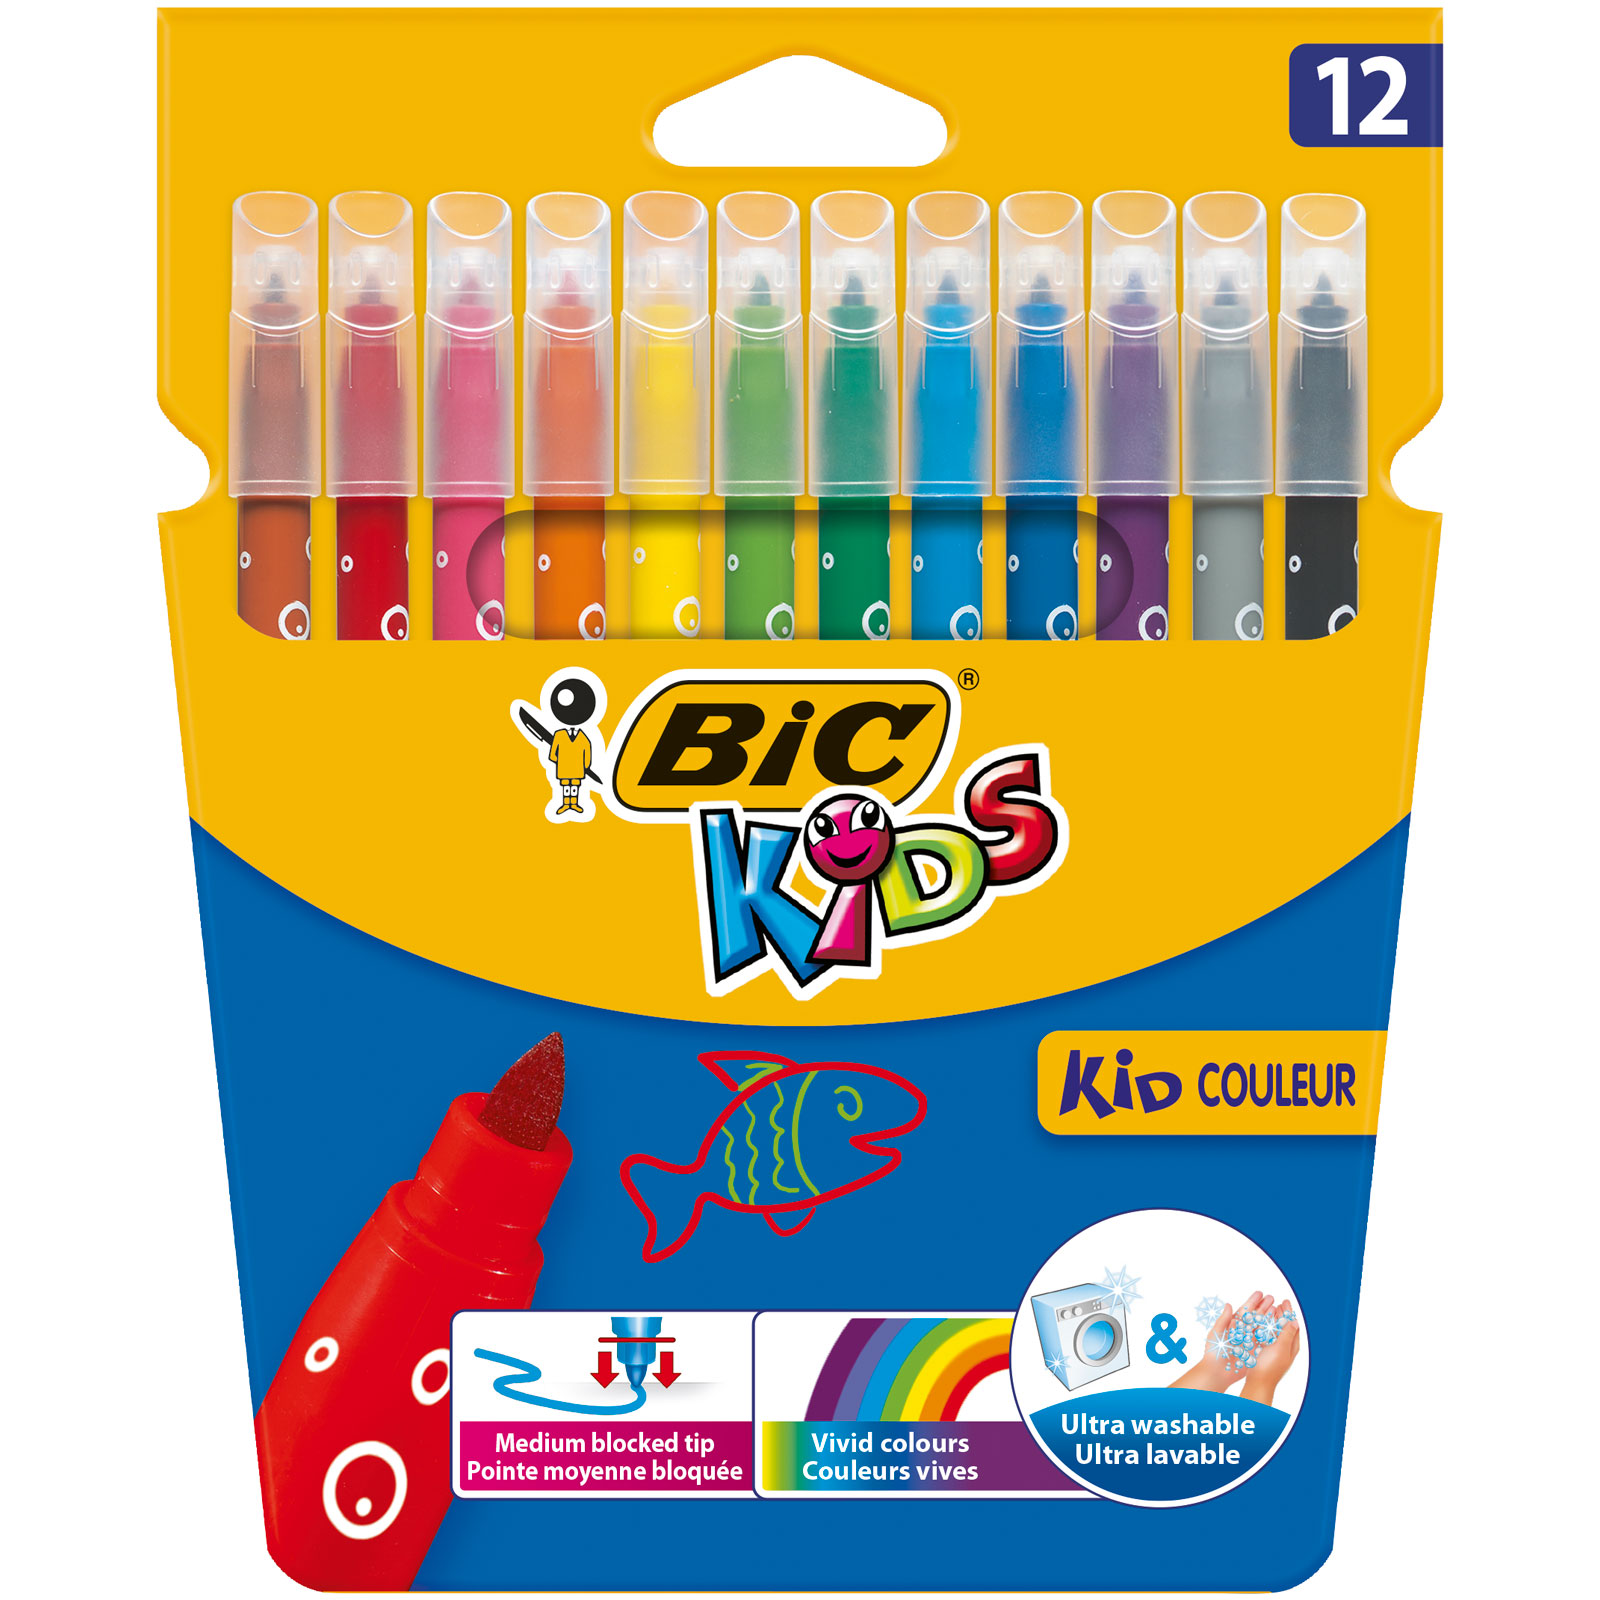 BIC Kids Kid Couleur Feutres de Coloriage - Etui Carton de 12